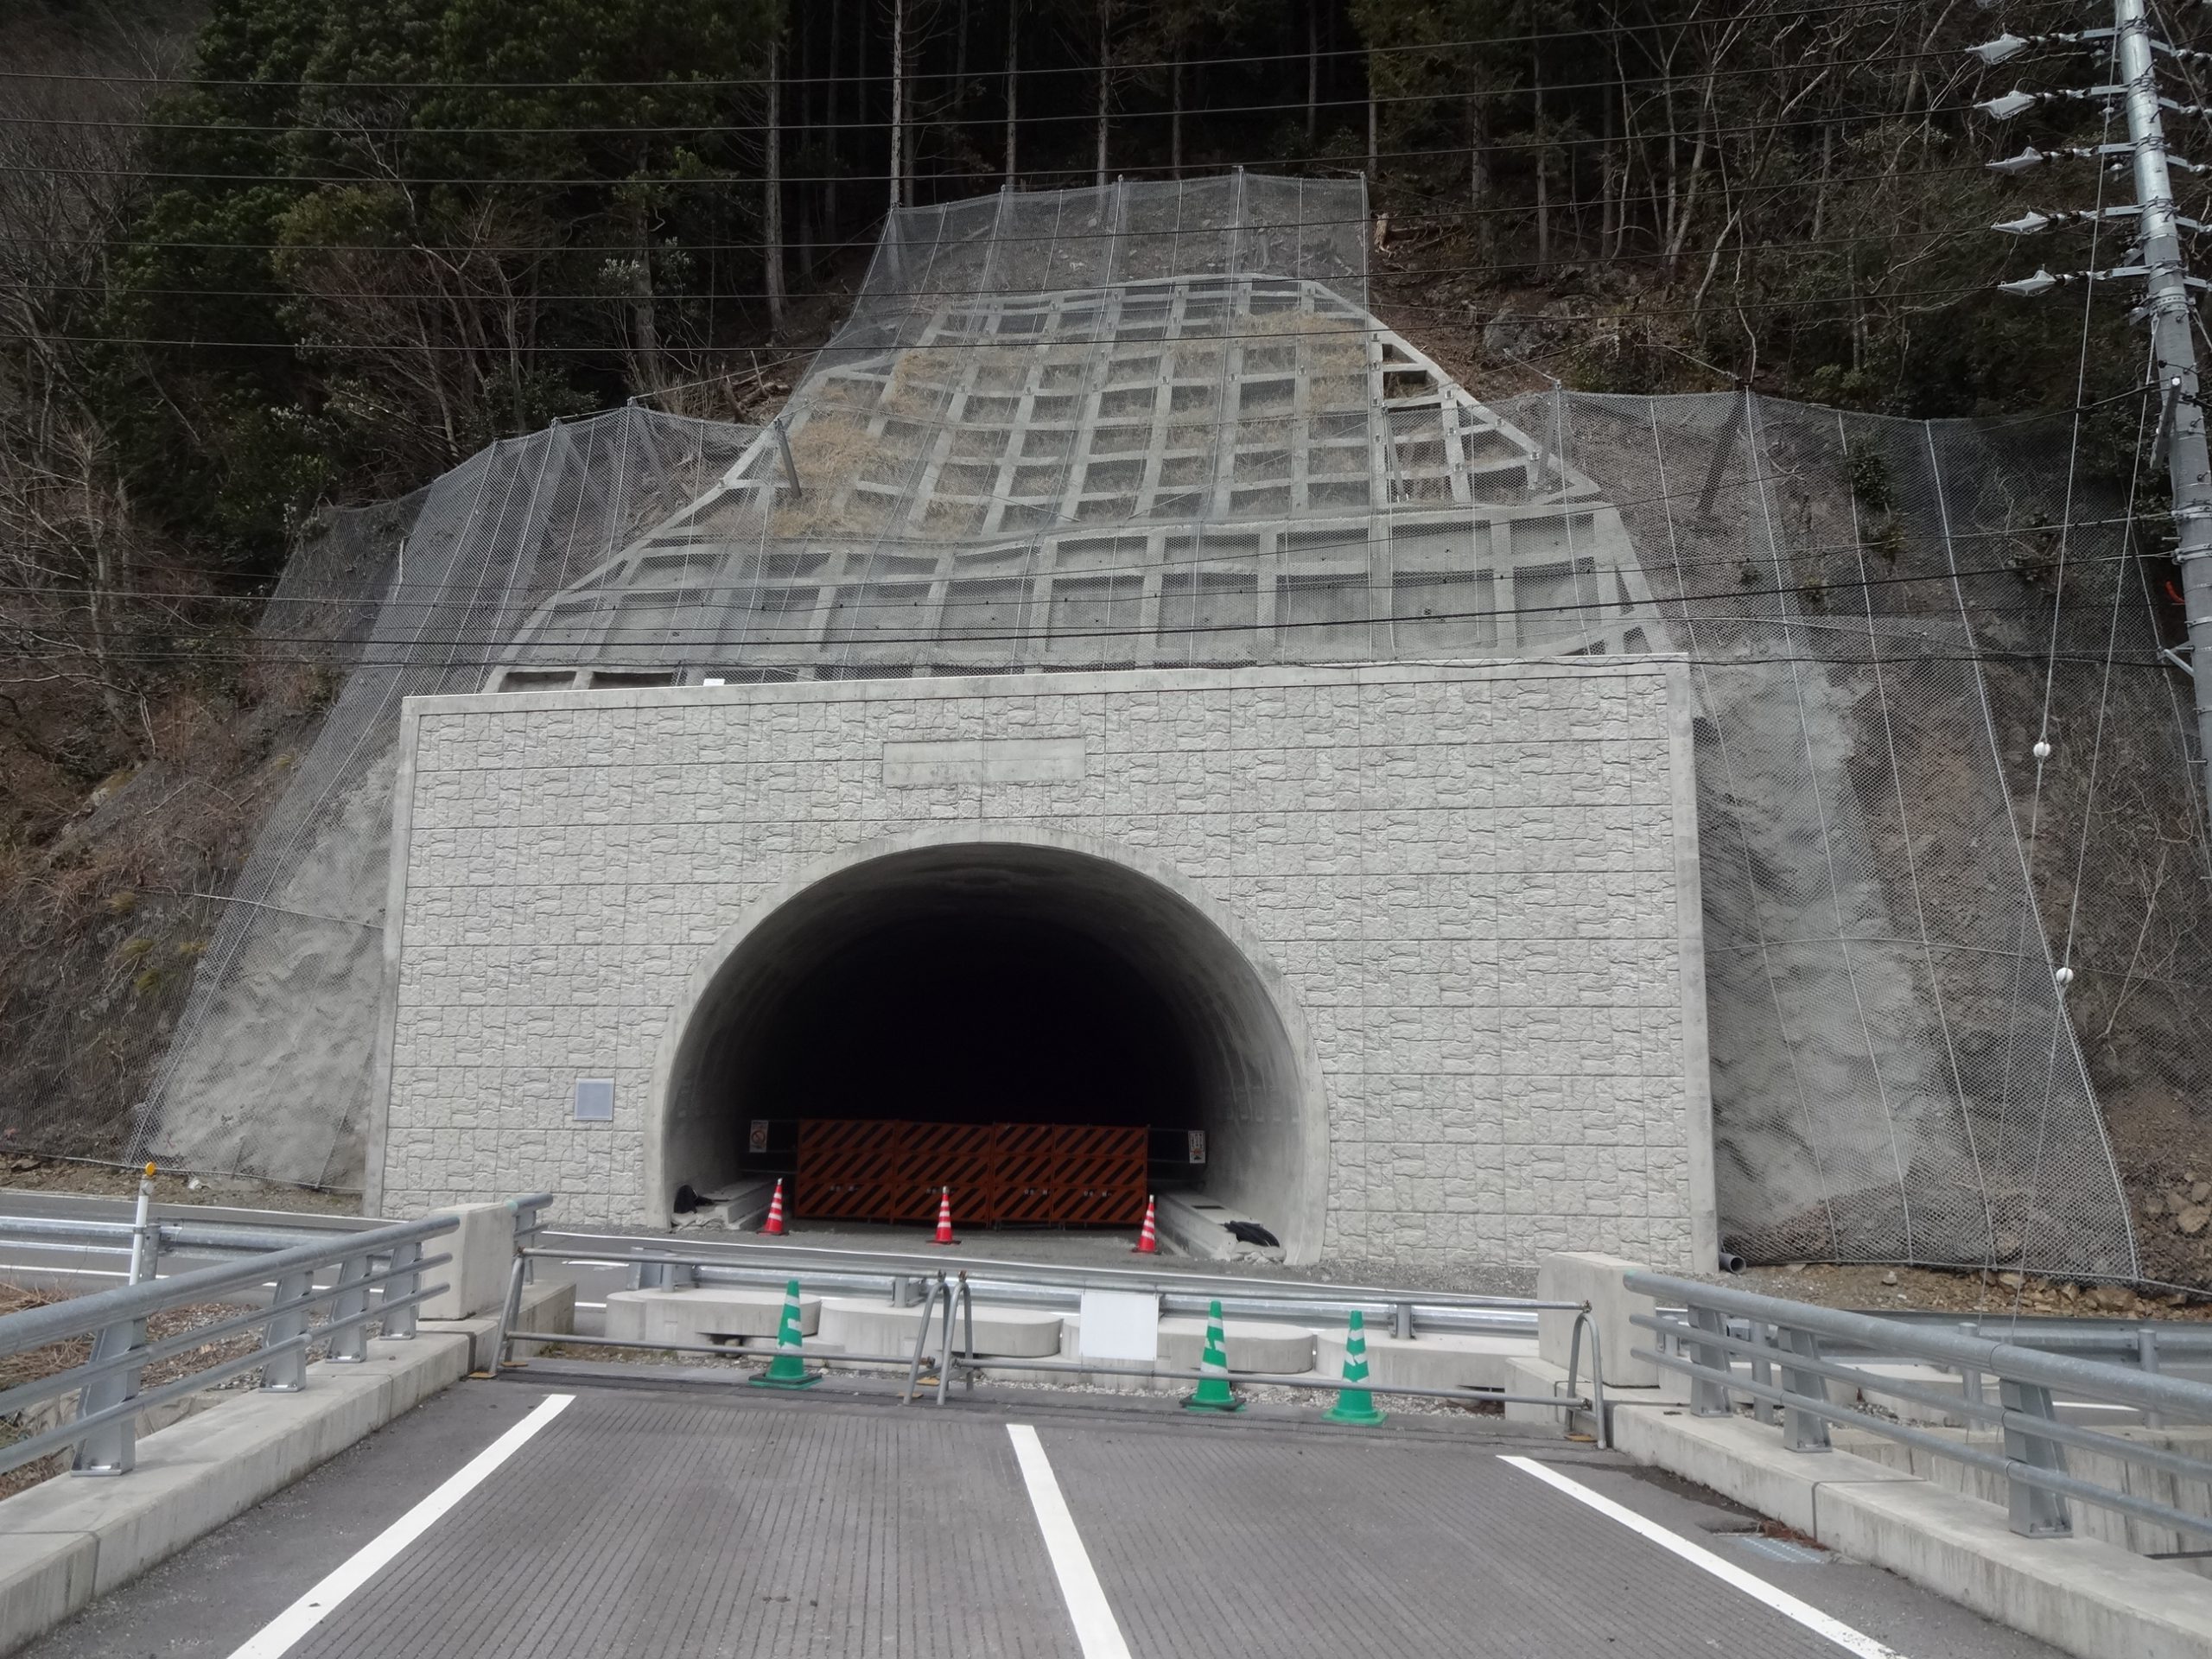 横山トンネル工事〔一般国道417号〕に伴う測量業務